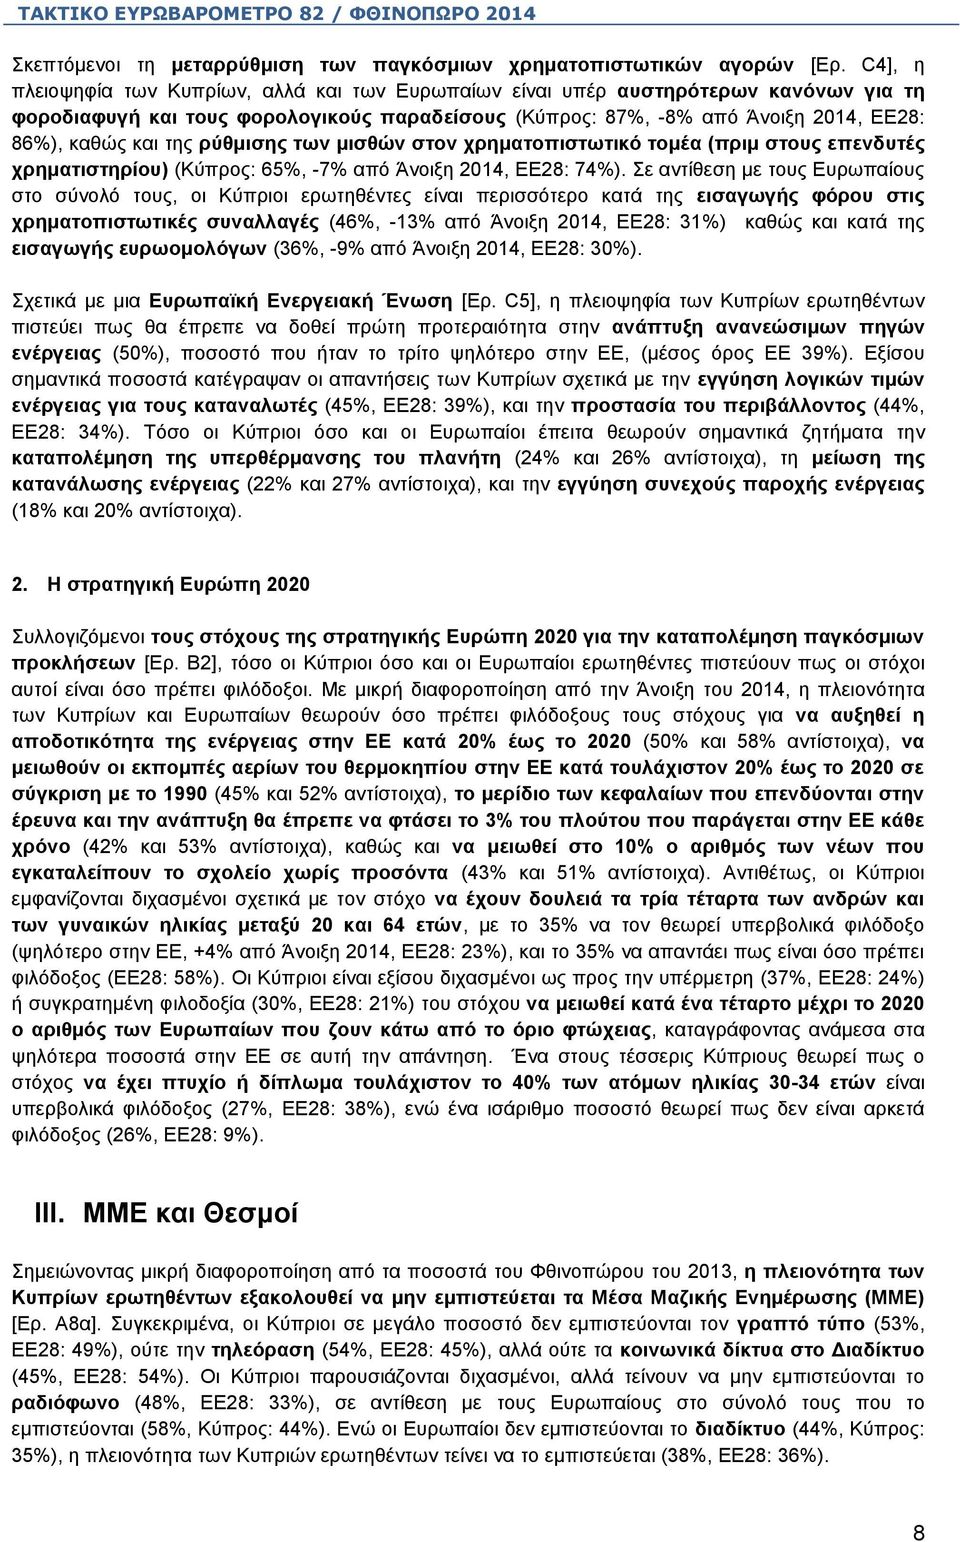 ρύθμισης των μισθών στον χρηματοπιστωτικό τομέα (πριμ στους επενδυτές χρηματιστηρίου) (Κύπρος: 65%, -7% από Άνοιξη 2014, ΕΕ28: 74%).